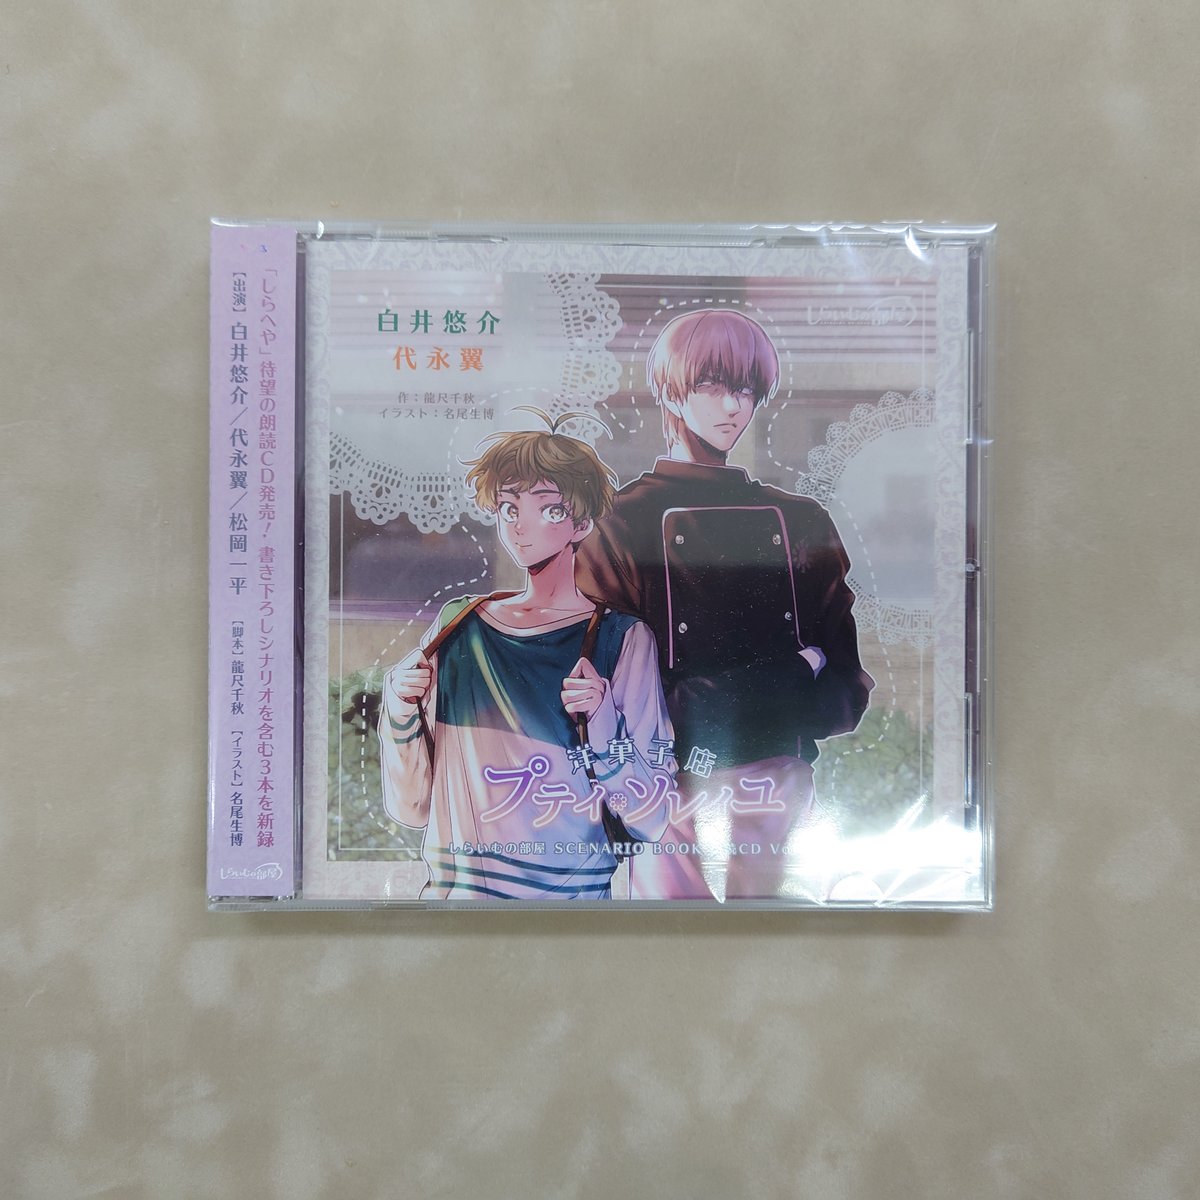 しらいむの部屋 SCENARIO BOOK 朗読CD vol.1 『洋菓子店 プティ